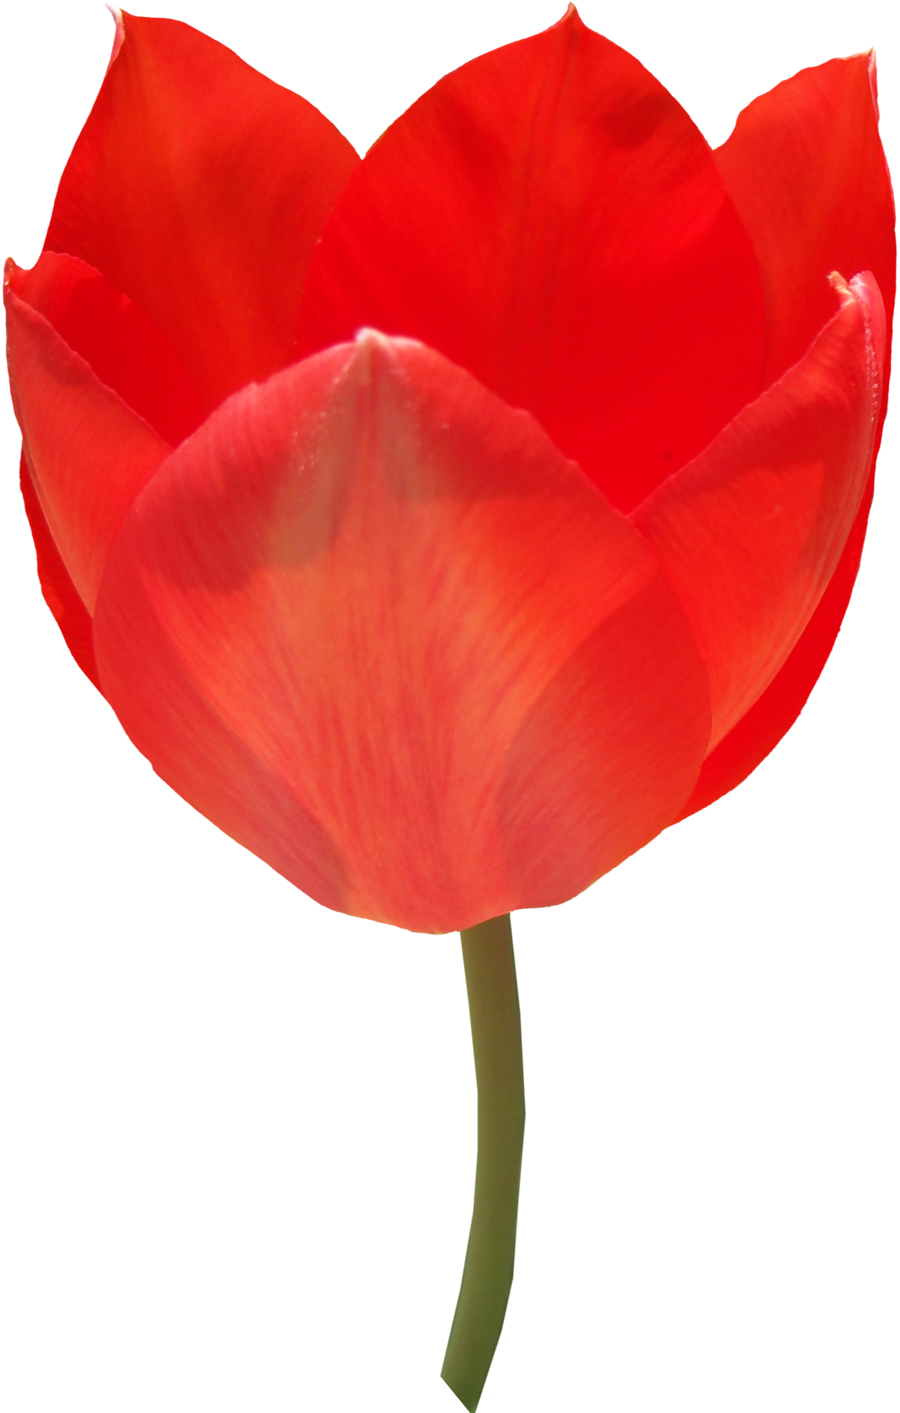 Foto fresche del tulipano rosso del tulipano